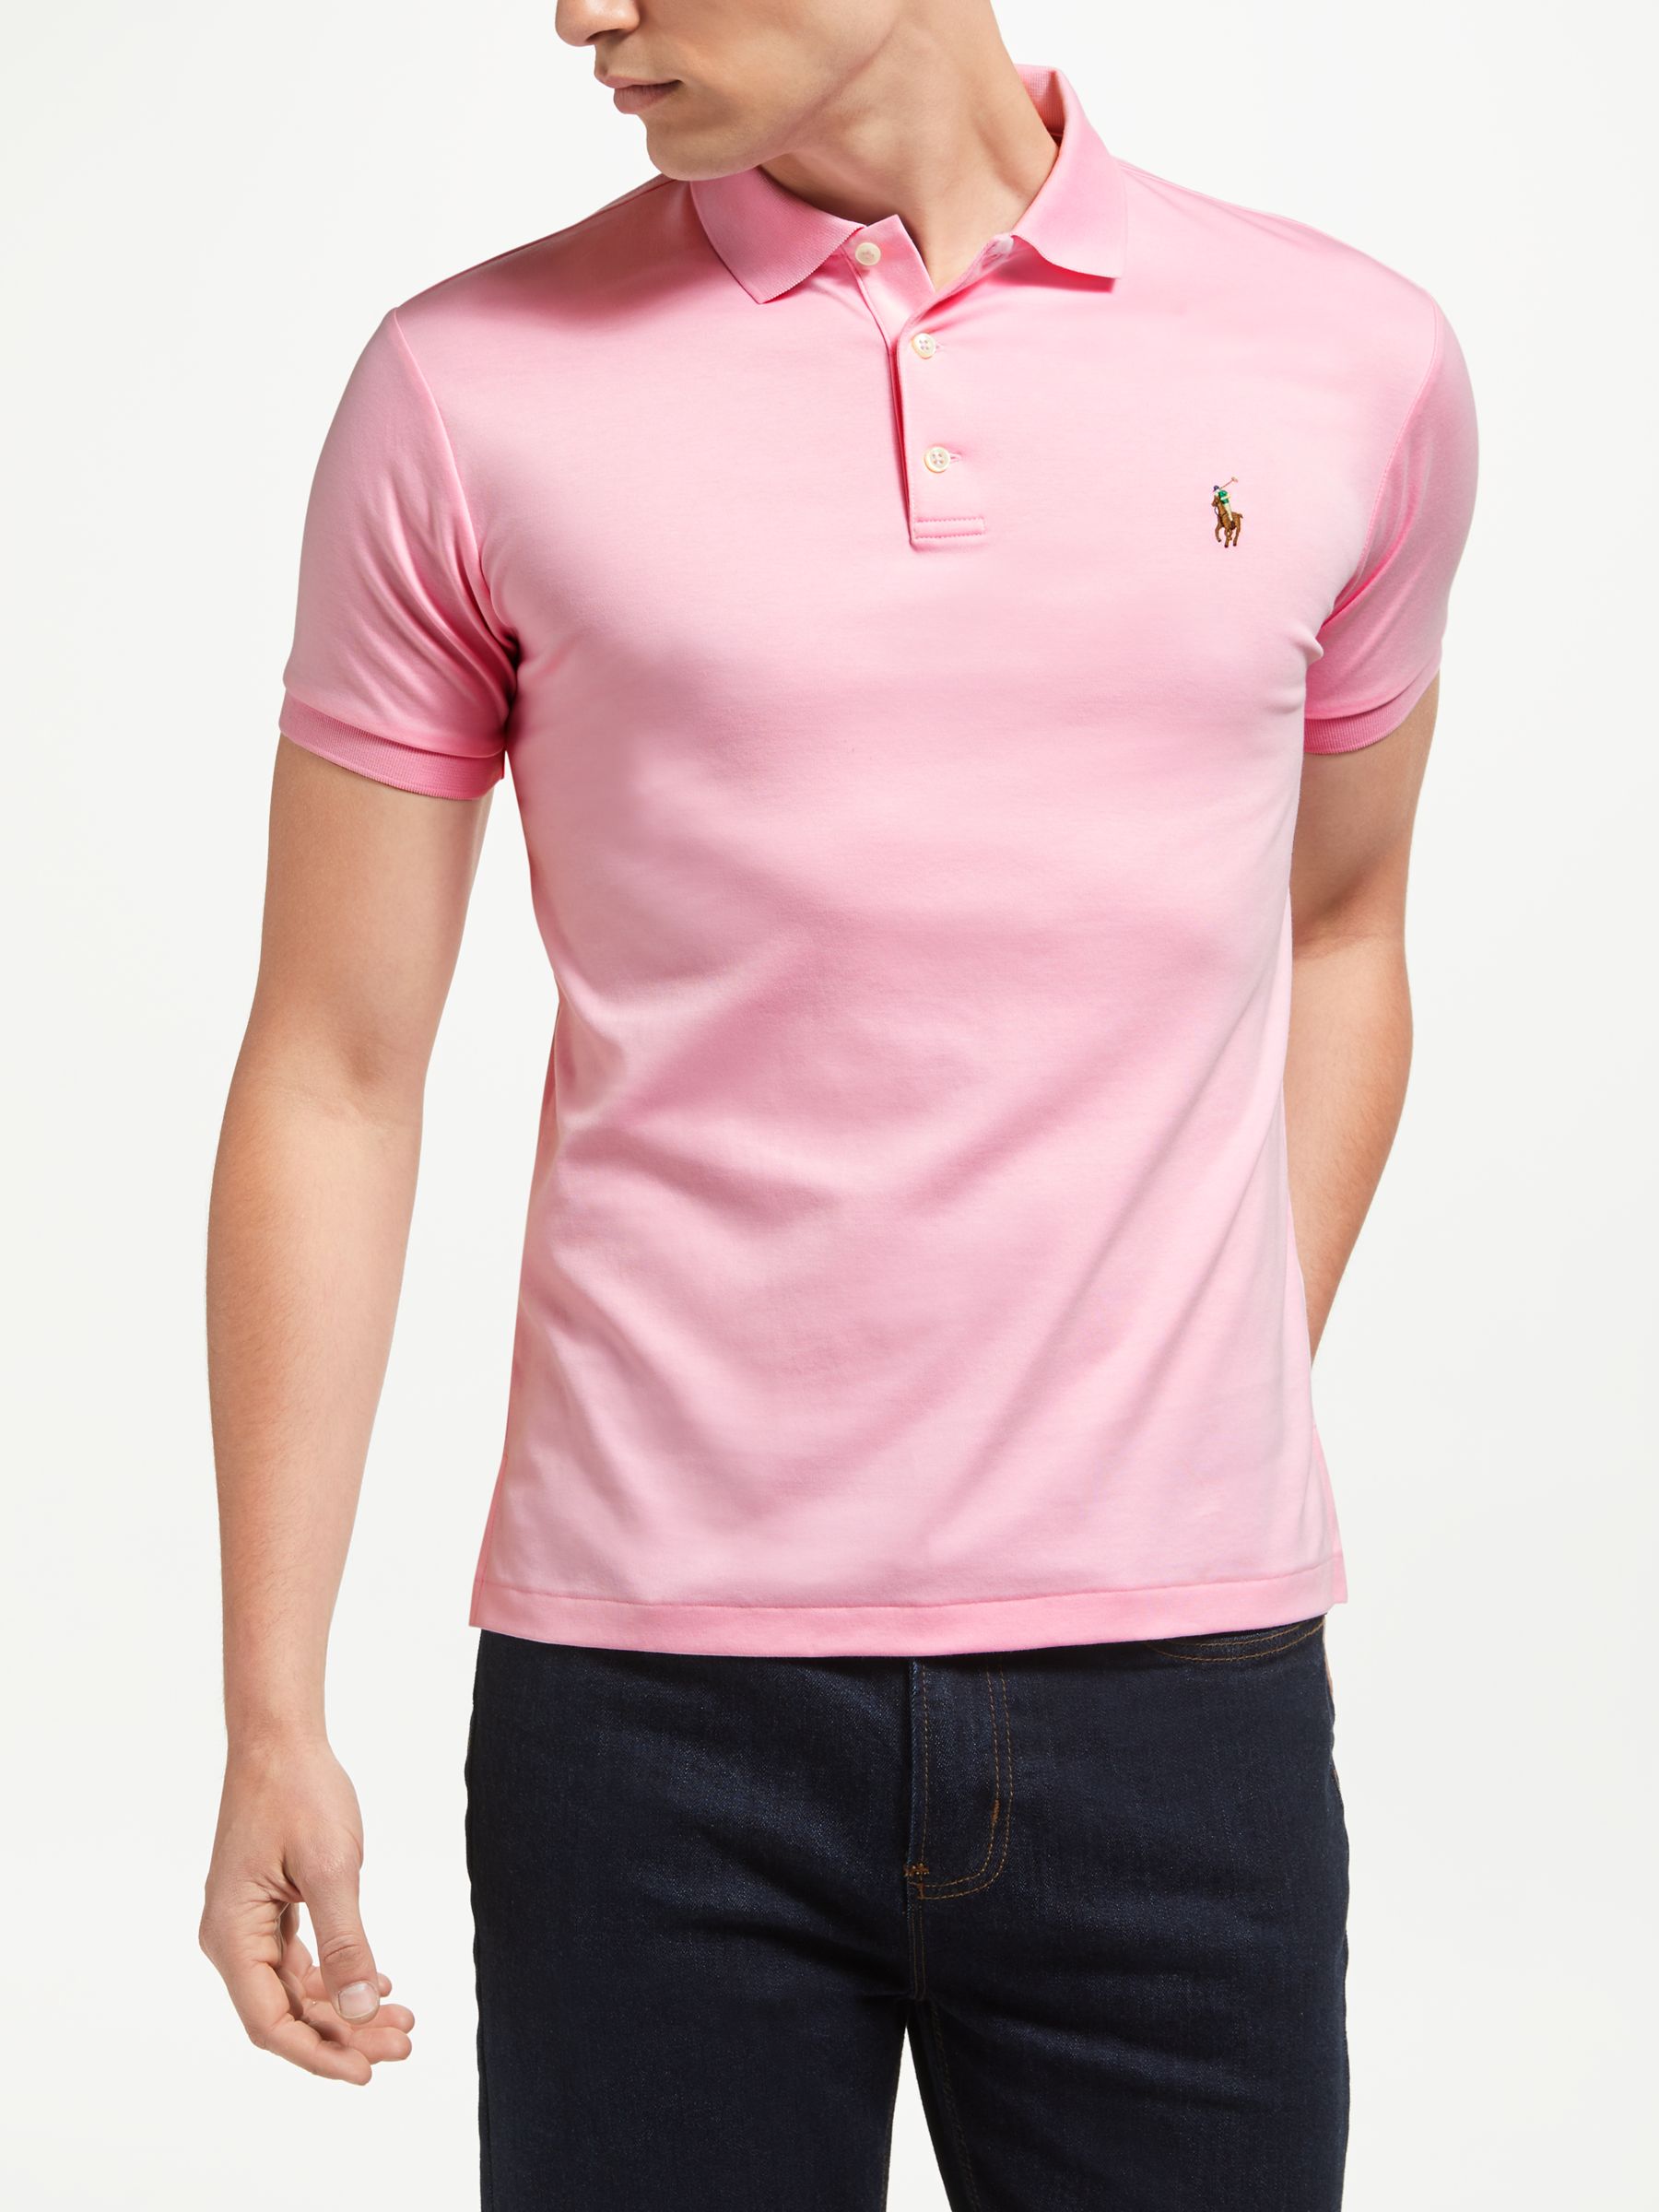 mens pink polo shirt ralph lauren